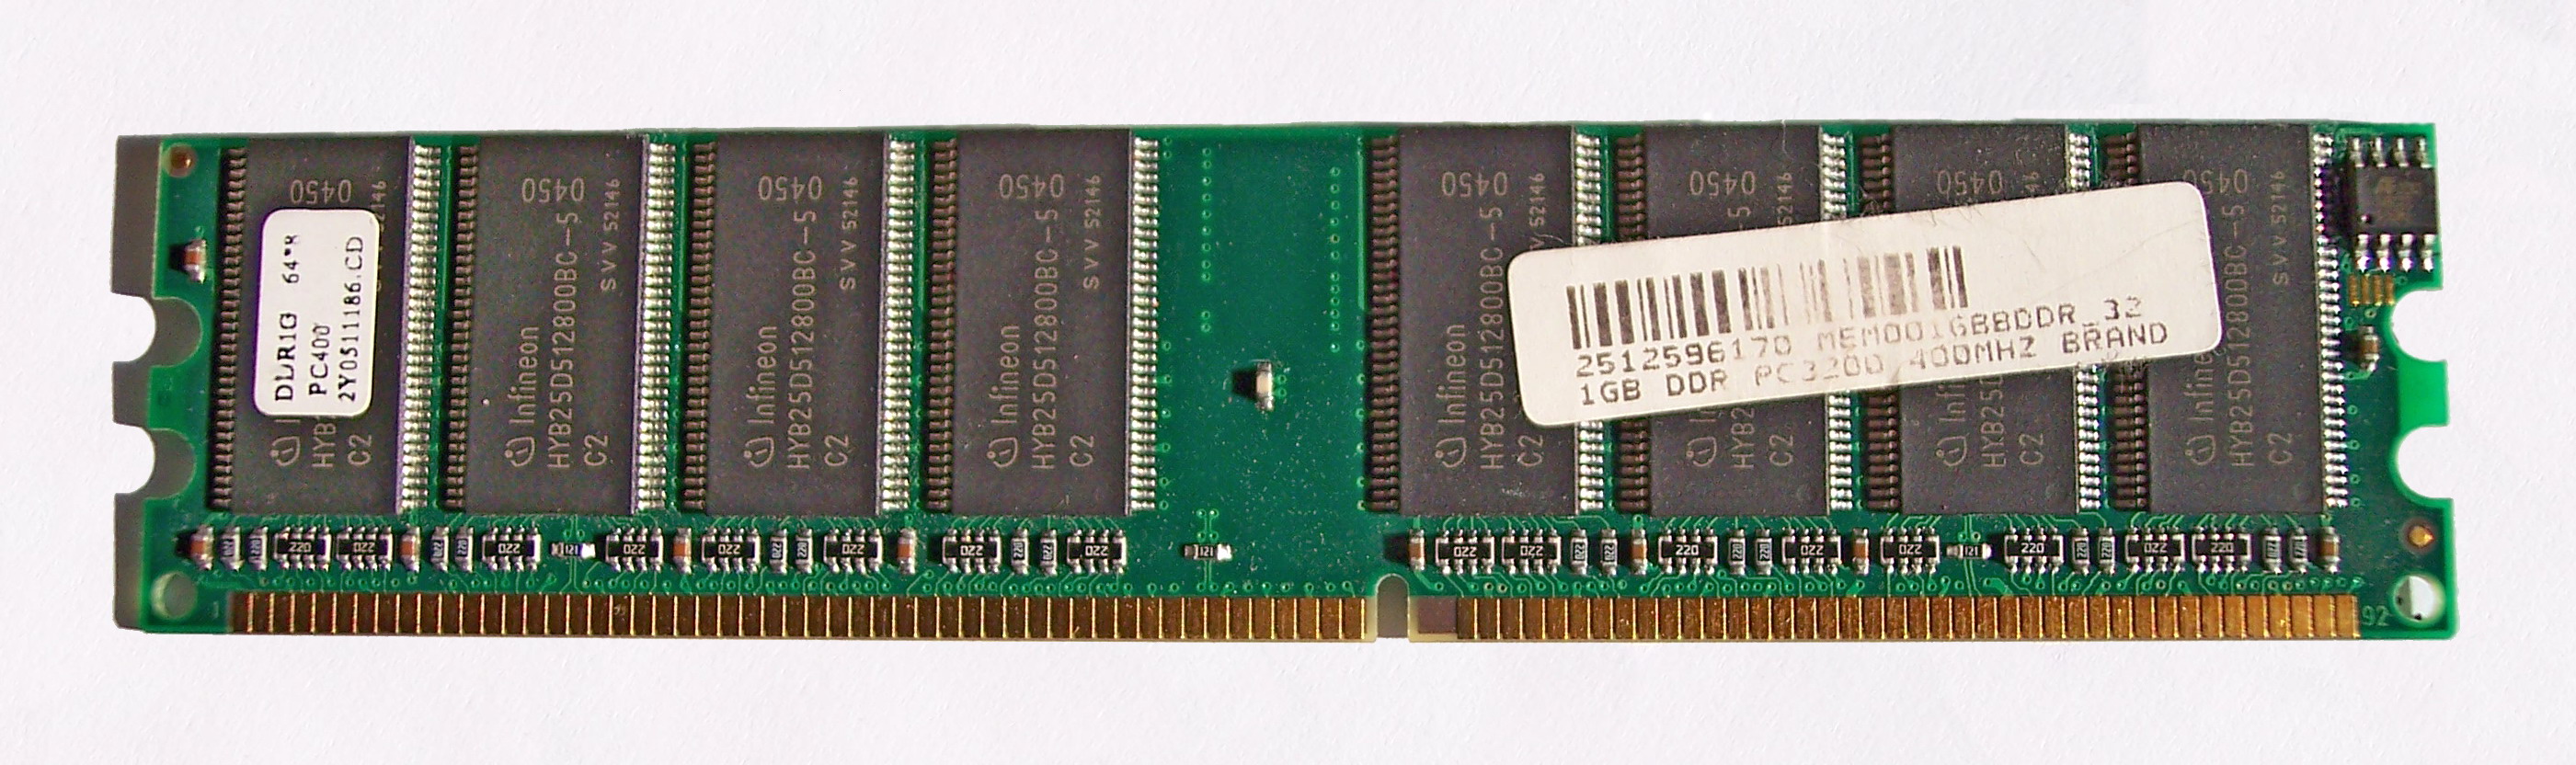 File:DDR RAM-3.jpg - Wikimedia Commons